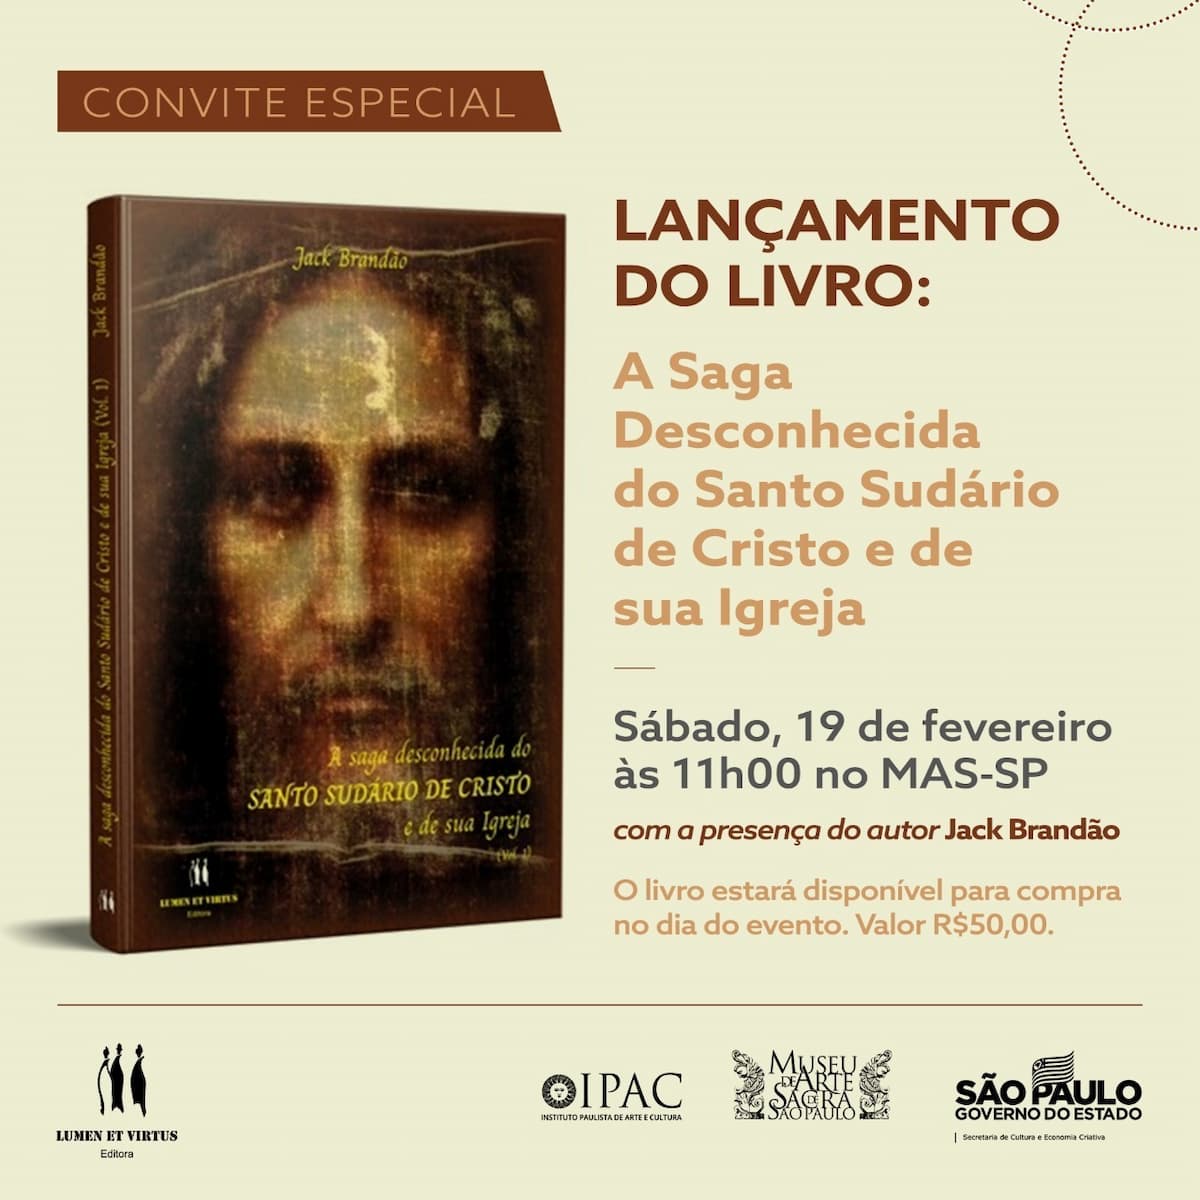 Livro "A saga desconhecida do SUDÁRIO DE CRISTO e de sua Igreja", livre - couverture, invitation. Divulgation.